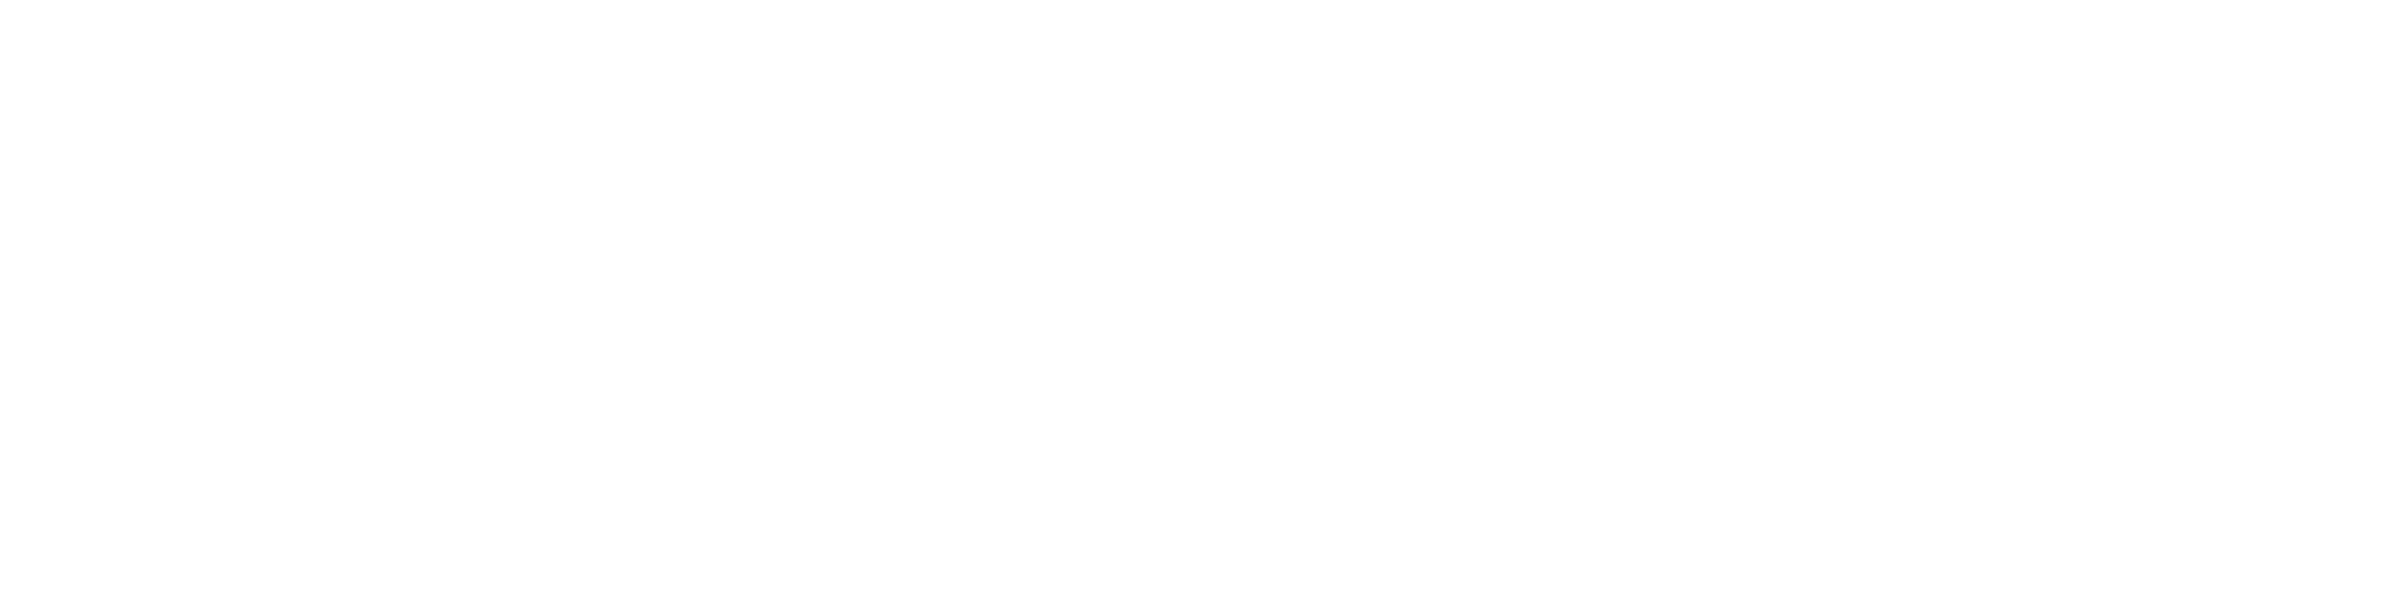 草場一壽工房 Museum Shop